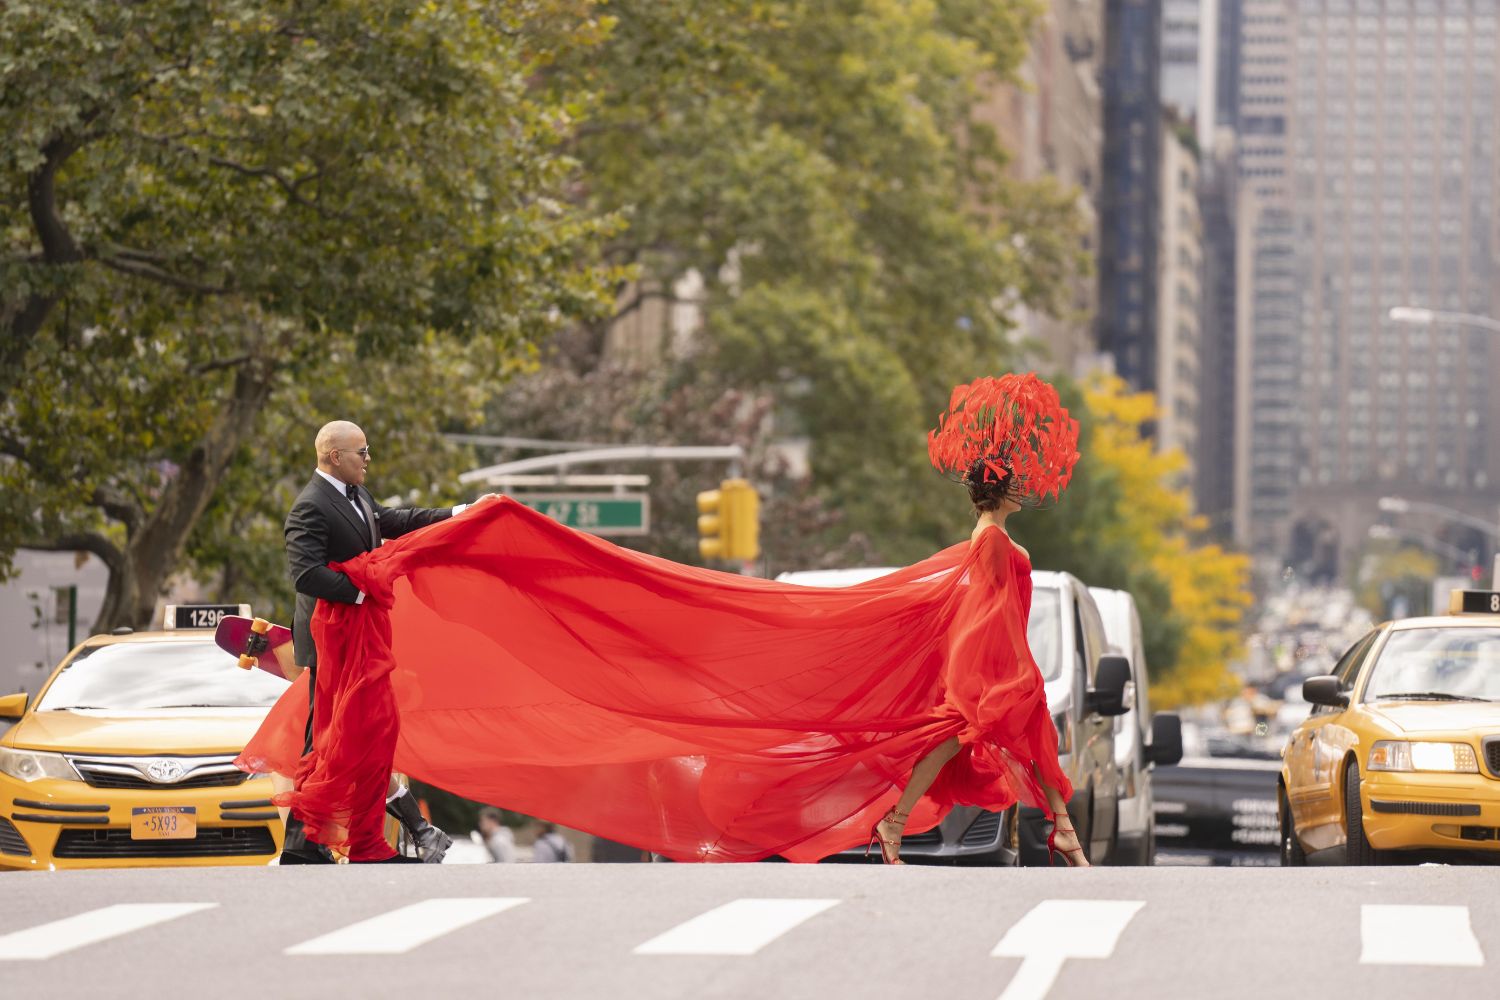 Mulher atravessa uma rua de Nova York usando um vestido vermelho com longa cauda, na série "And Just Like That".